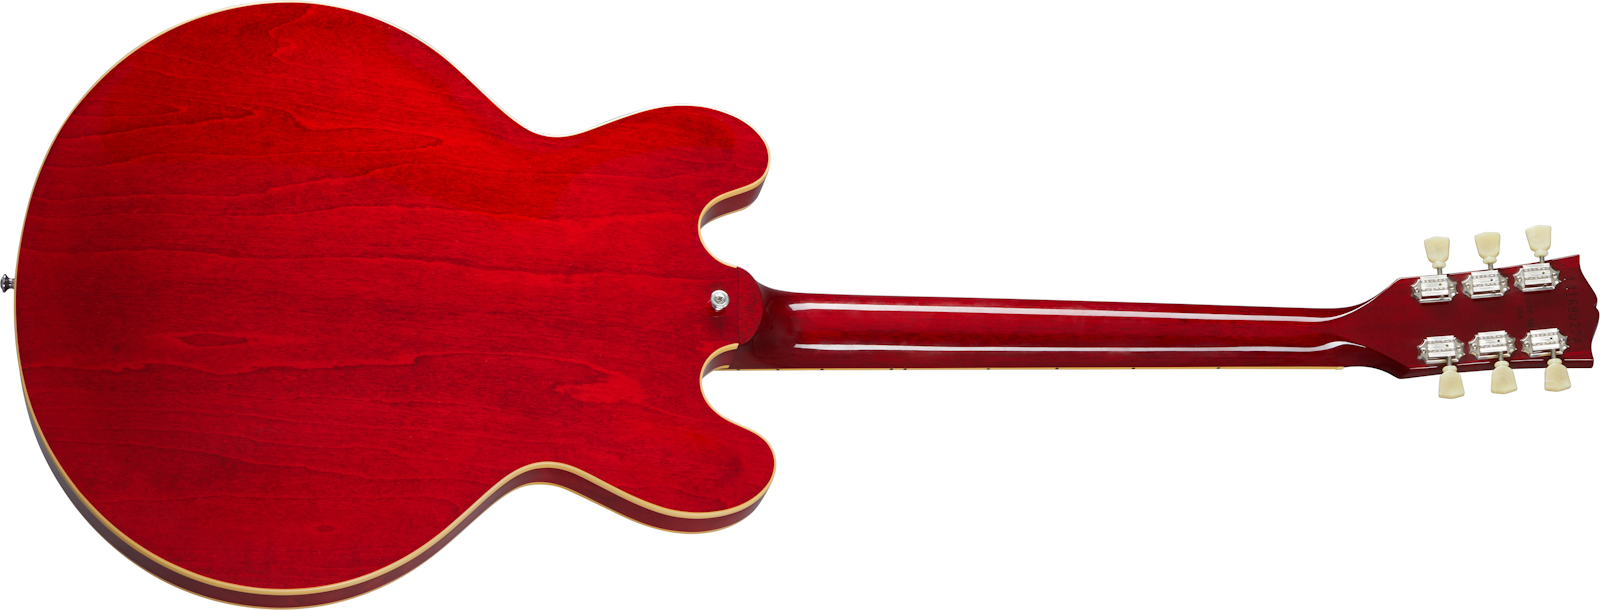 Gibson Es-335 Dot Lh Original 2020 Gaucher 2h Ht Rw - Sixties Cherry - Guitarra electrica para zurdos - Variation 1